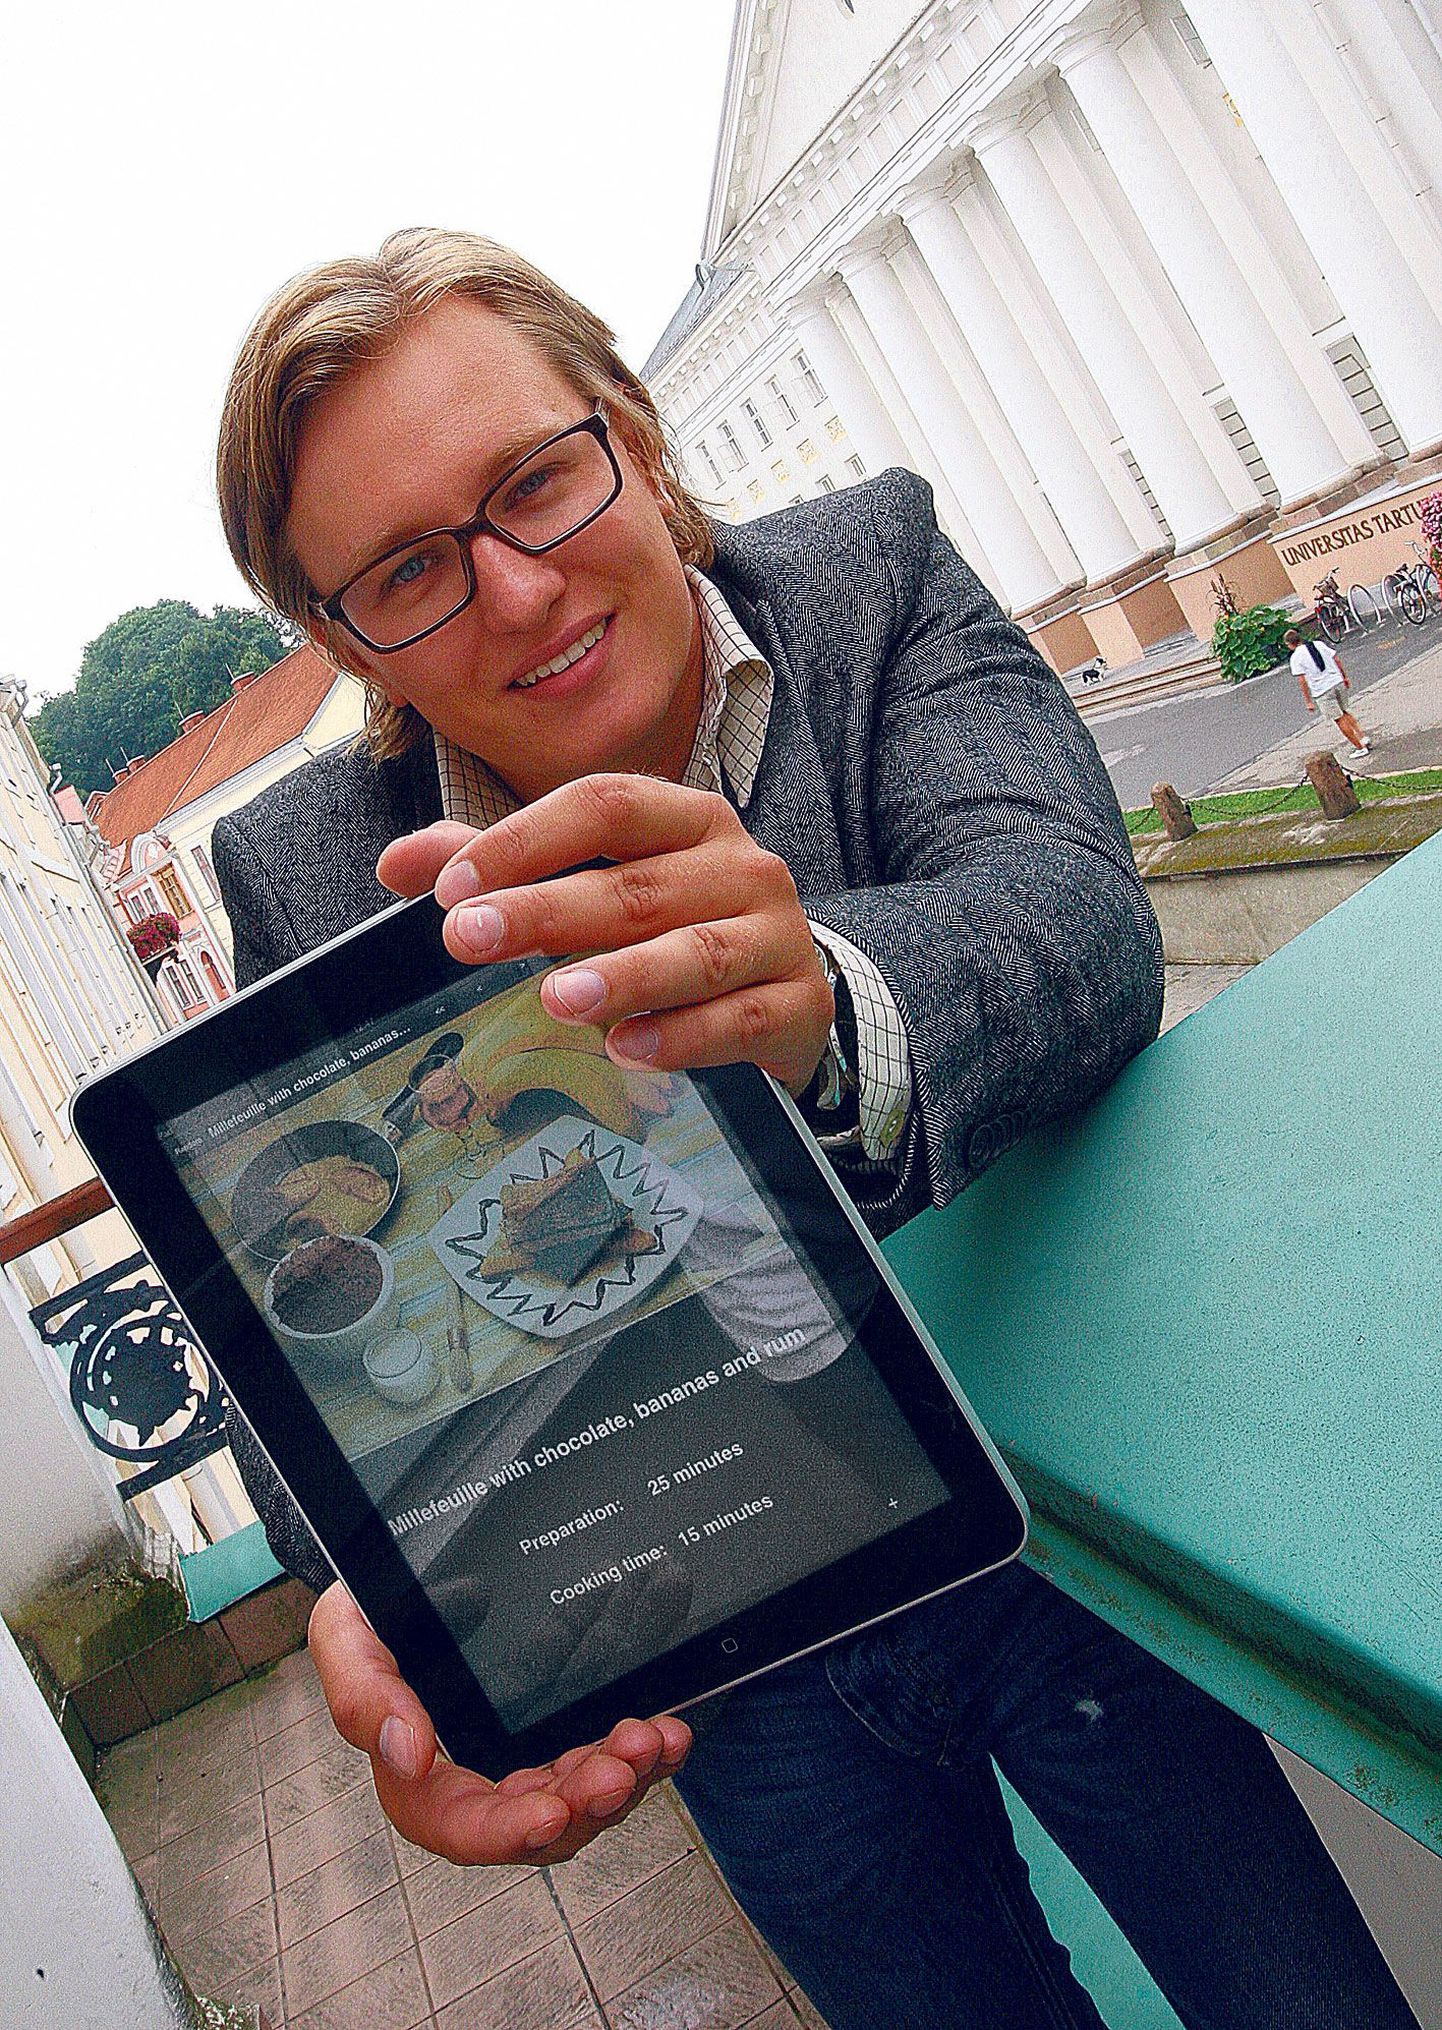 Indilo Wirelessi juht Marius Arras näitab iPadi ekraanilt kokaraamatut, millesarnaseid võib peagi igaüks oma lemmikretseptidest kokku panna.